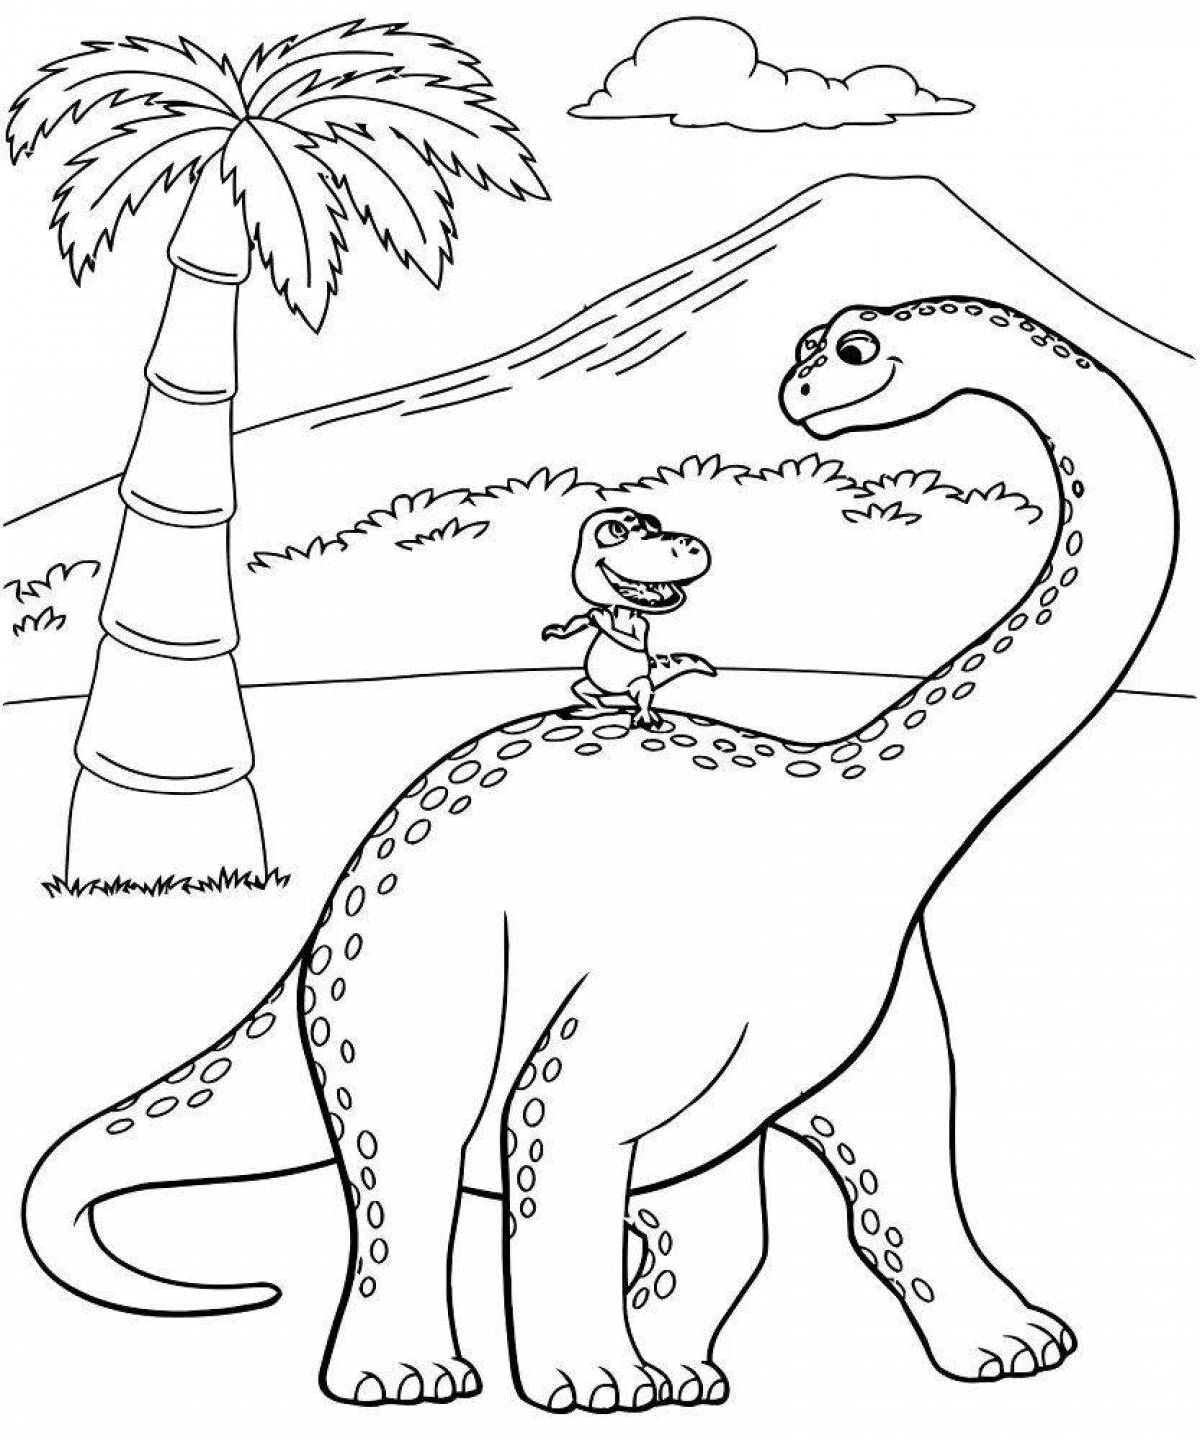 Раскраска динозавр формат а4. Динозавры / раскраска. Динозавр раскраска для детей. Динозавры картинки раскраски. Динозаврики раскраска для детей.